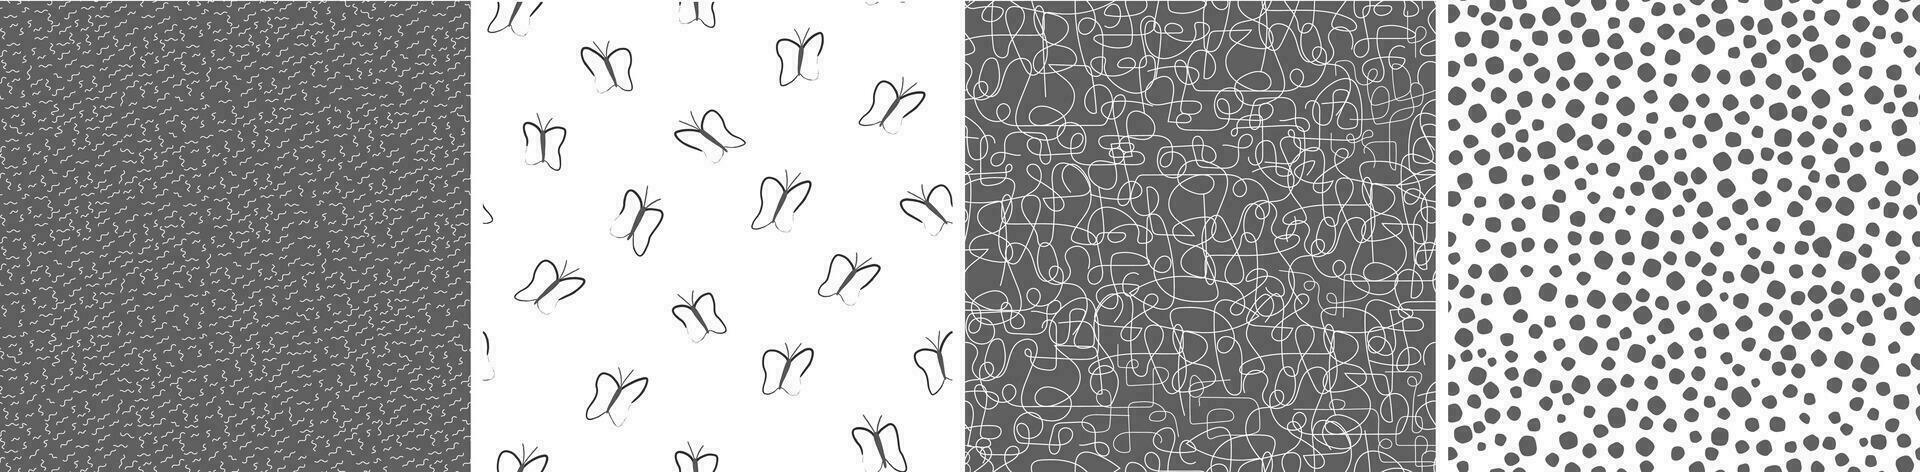 en uppsättning av sömlös mönster med kaotisk rader, prickar, geometrisk former, silhuetter av fjärilar. enkel abstrakt skriva ut. vektor grafik.